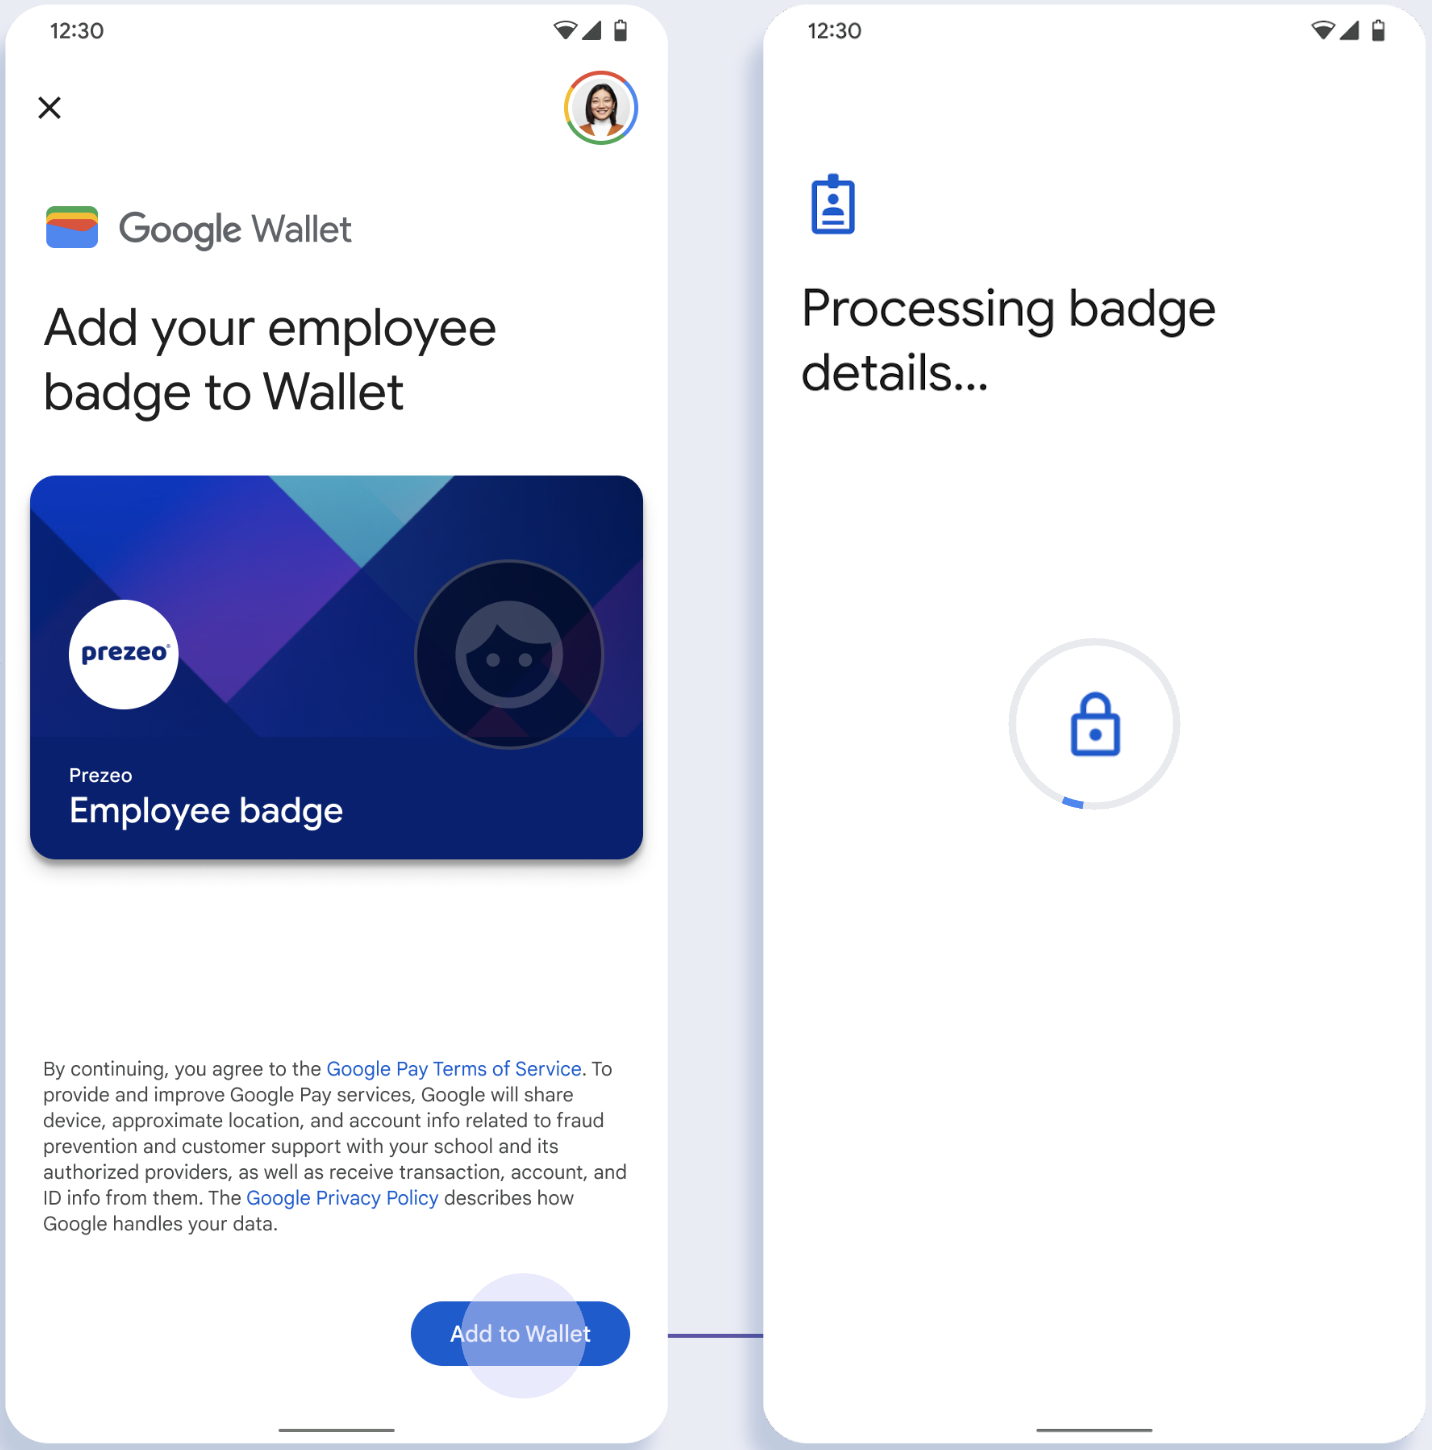 במסך הראשון, האפליקציה מתחברת ל-Google Wallet. במסך השני, המשתמש מאשר את התנאים וההגבלות וממשיך.